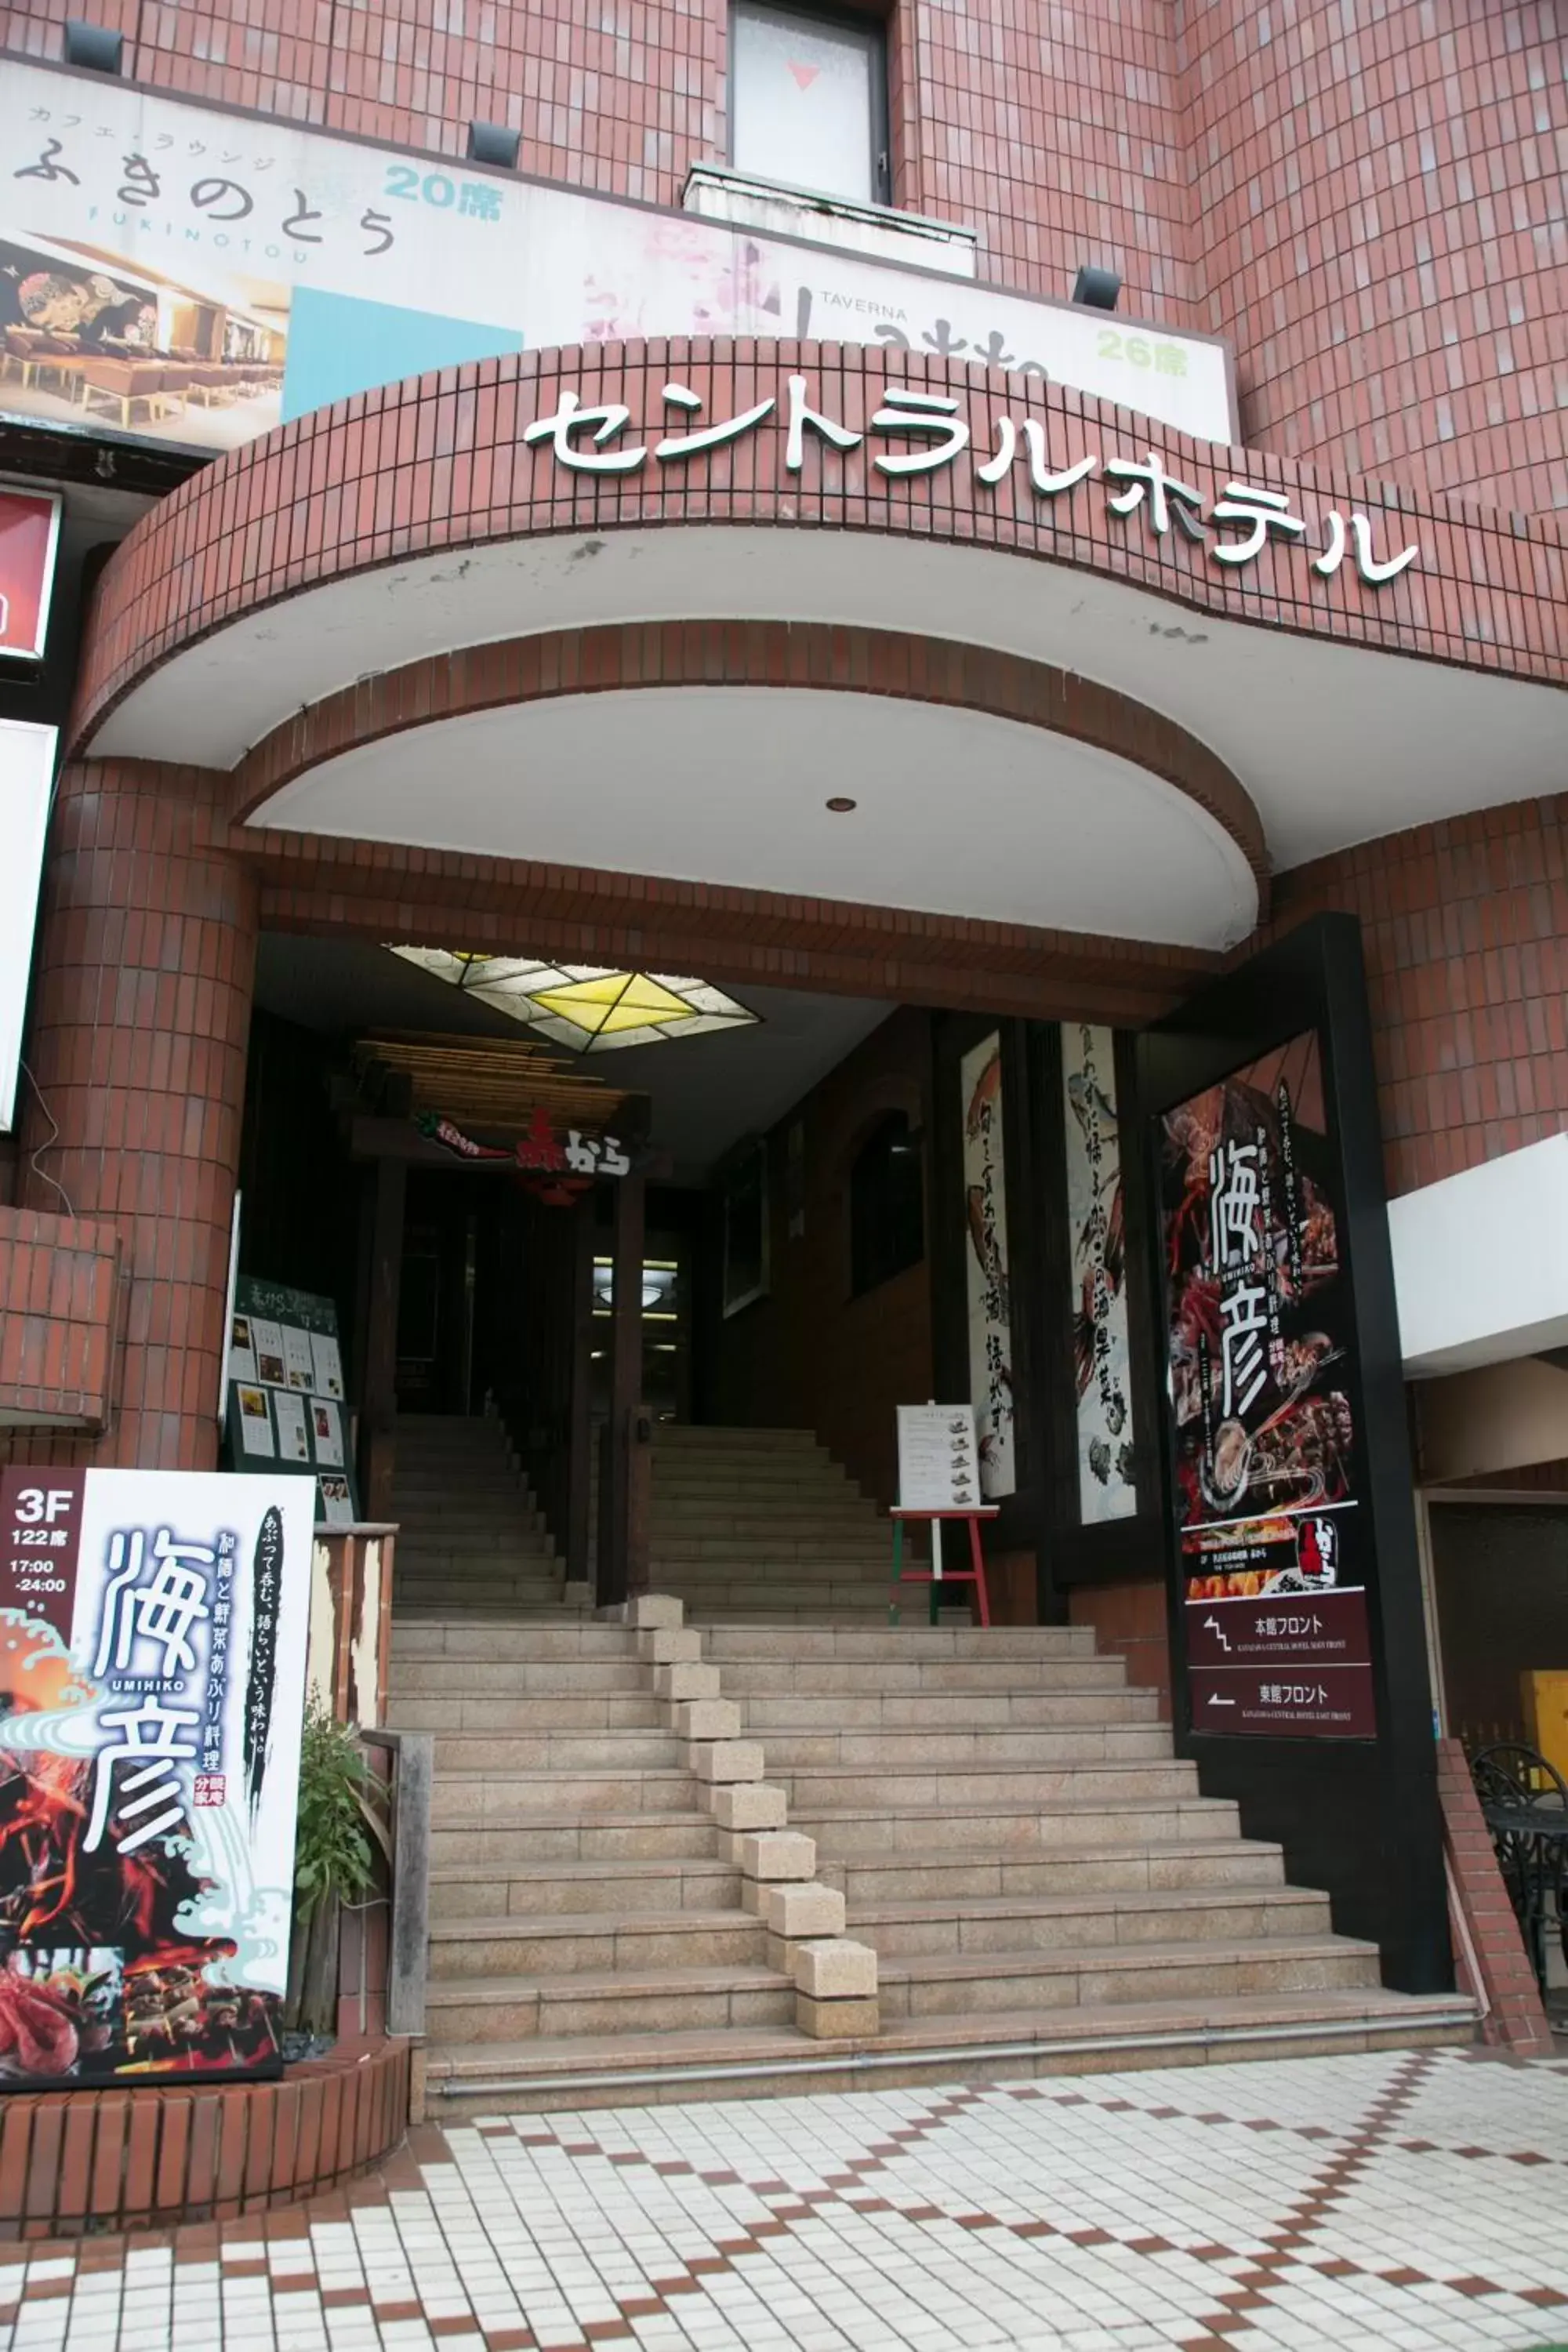 Facade/entrance in Kanazawa Central Hotel